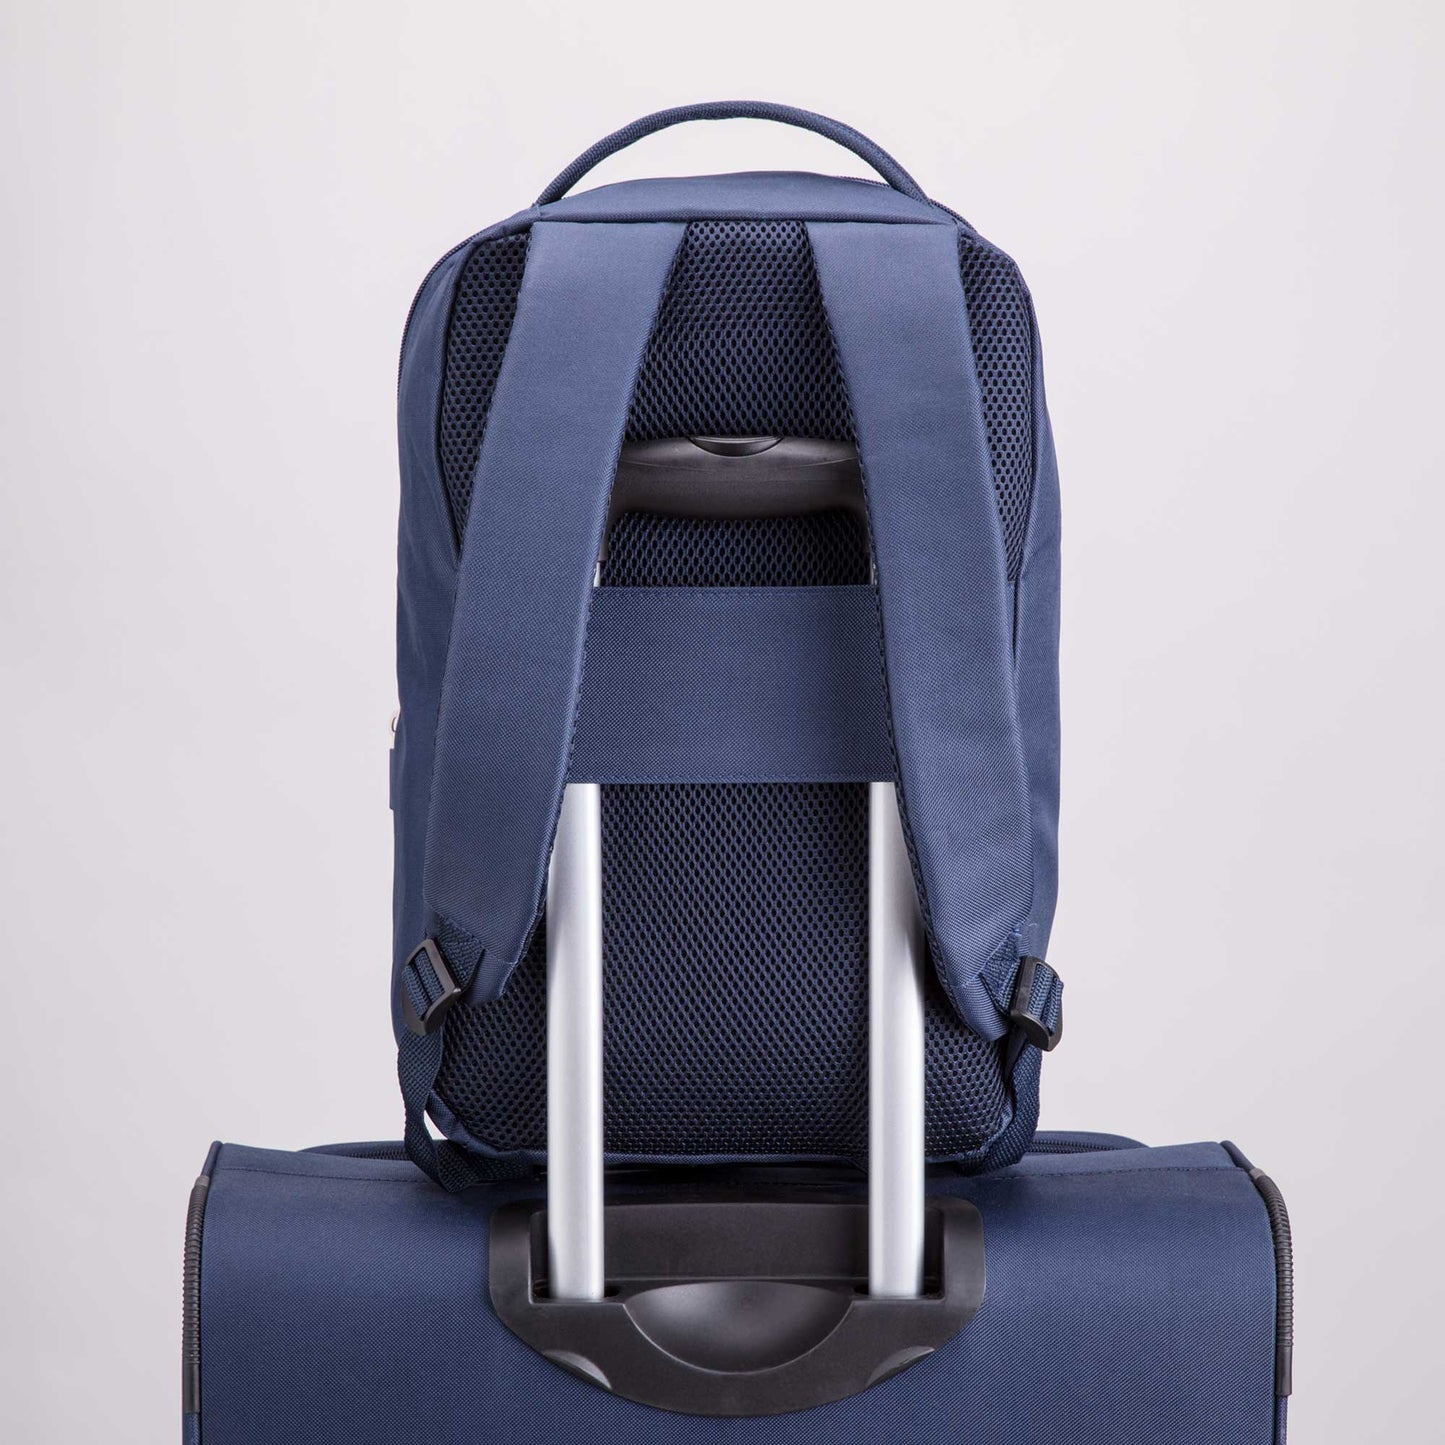 Split Colors Suitcase - Unisex